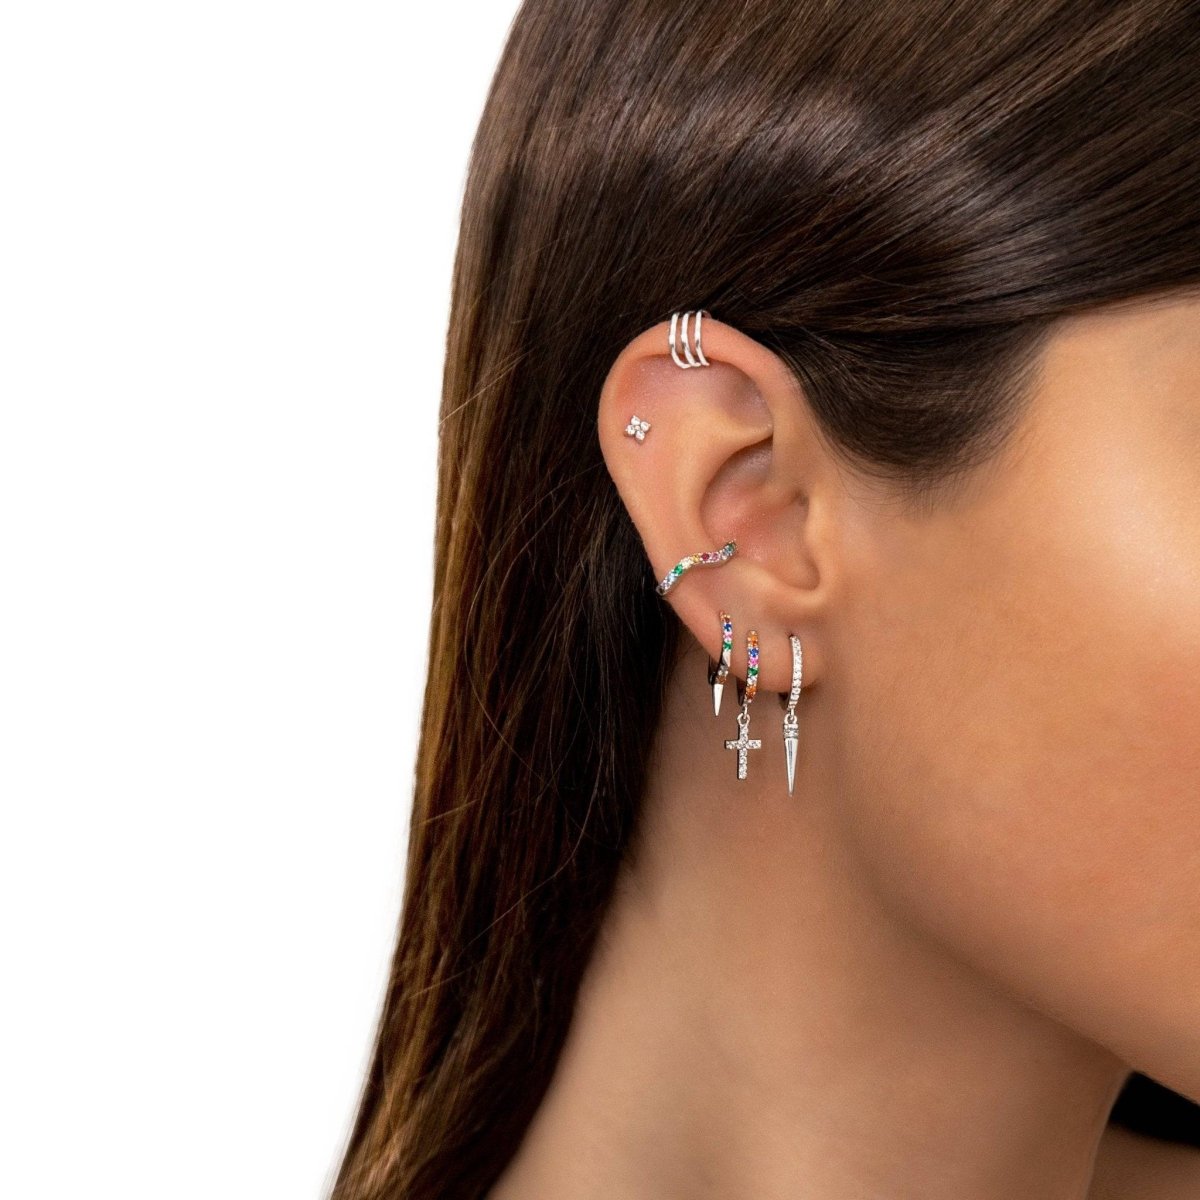 "Ear Cuff - Beauty" Earrings - Milas Jewels Shop